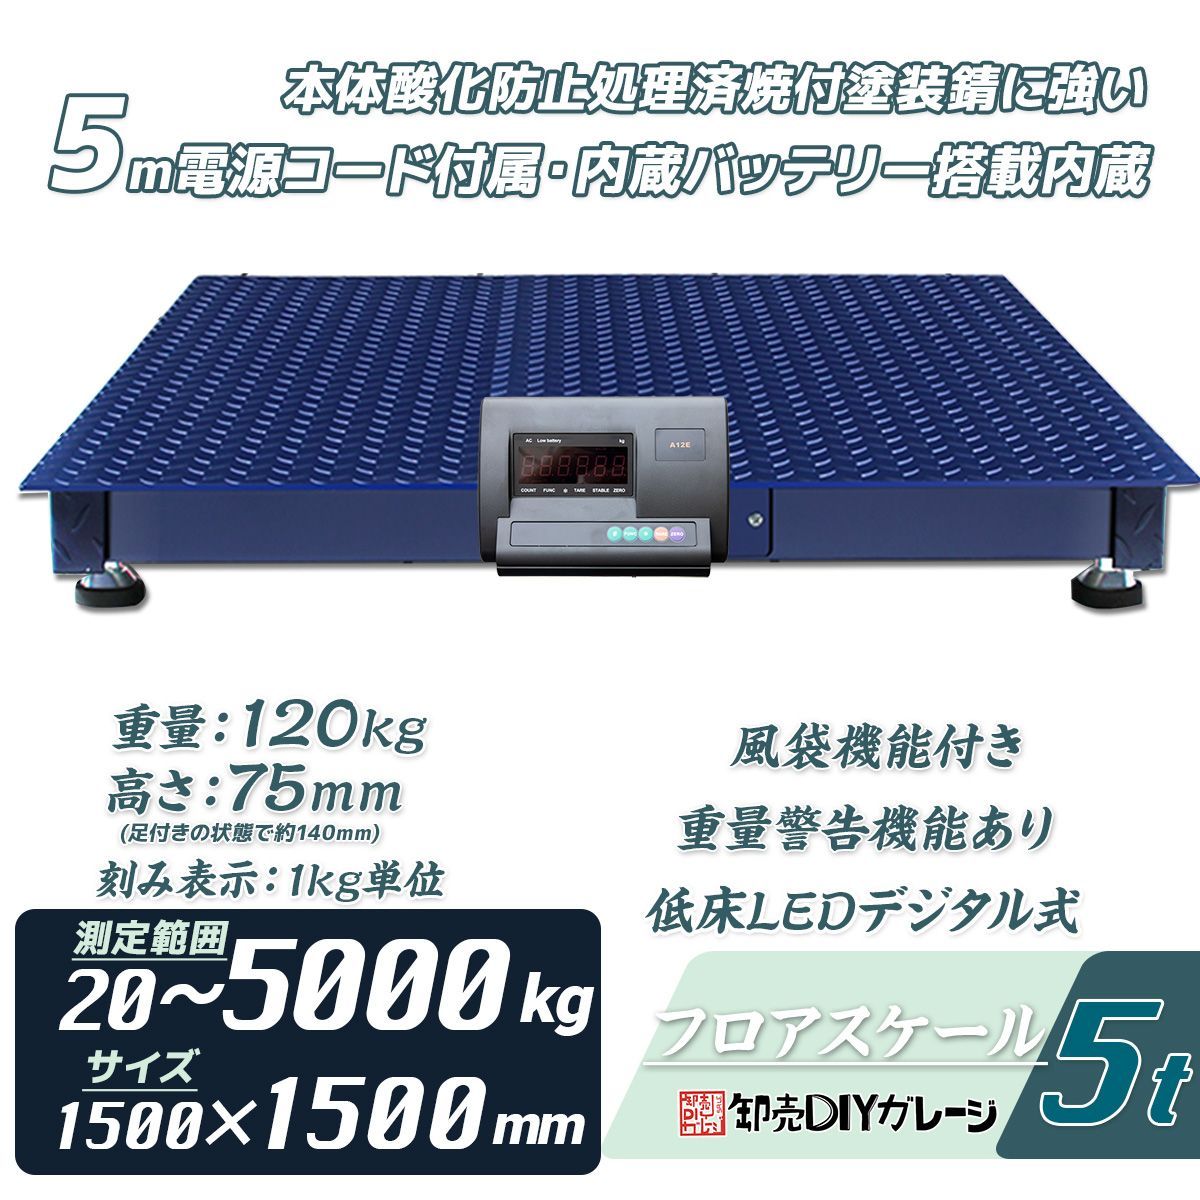 フロアスケール 5t 5000kg デジタル式 1500×1500mm 低床式計量器 台秤